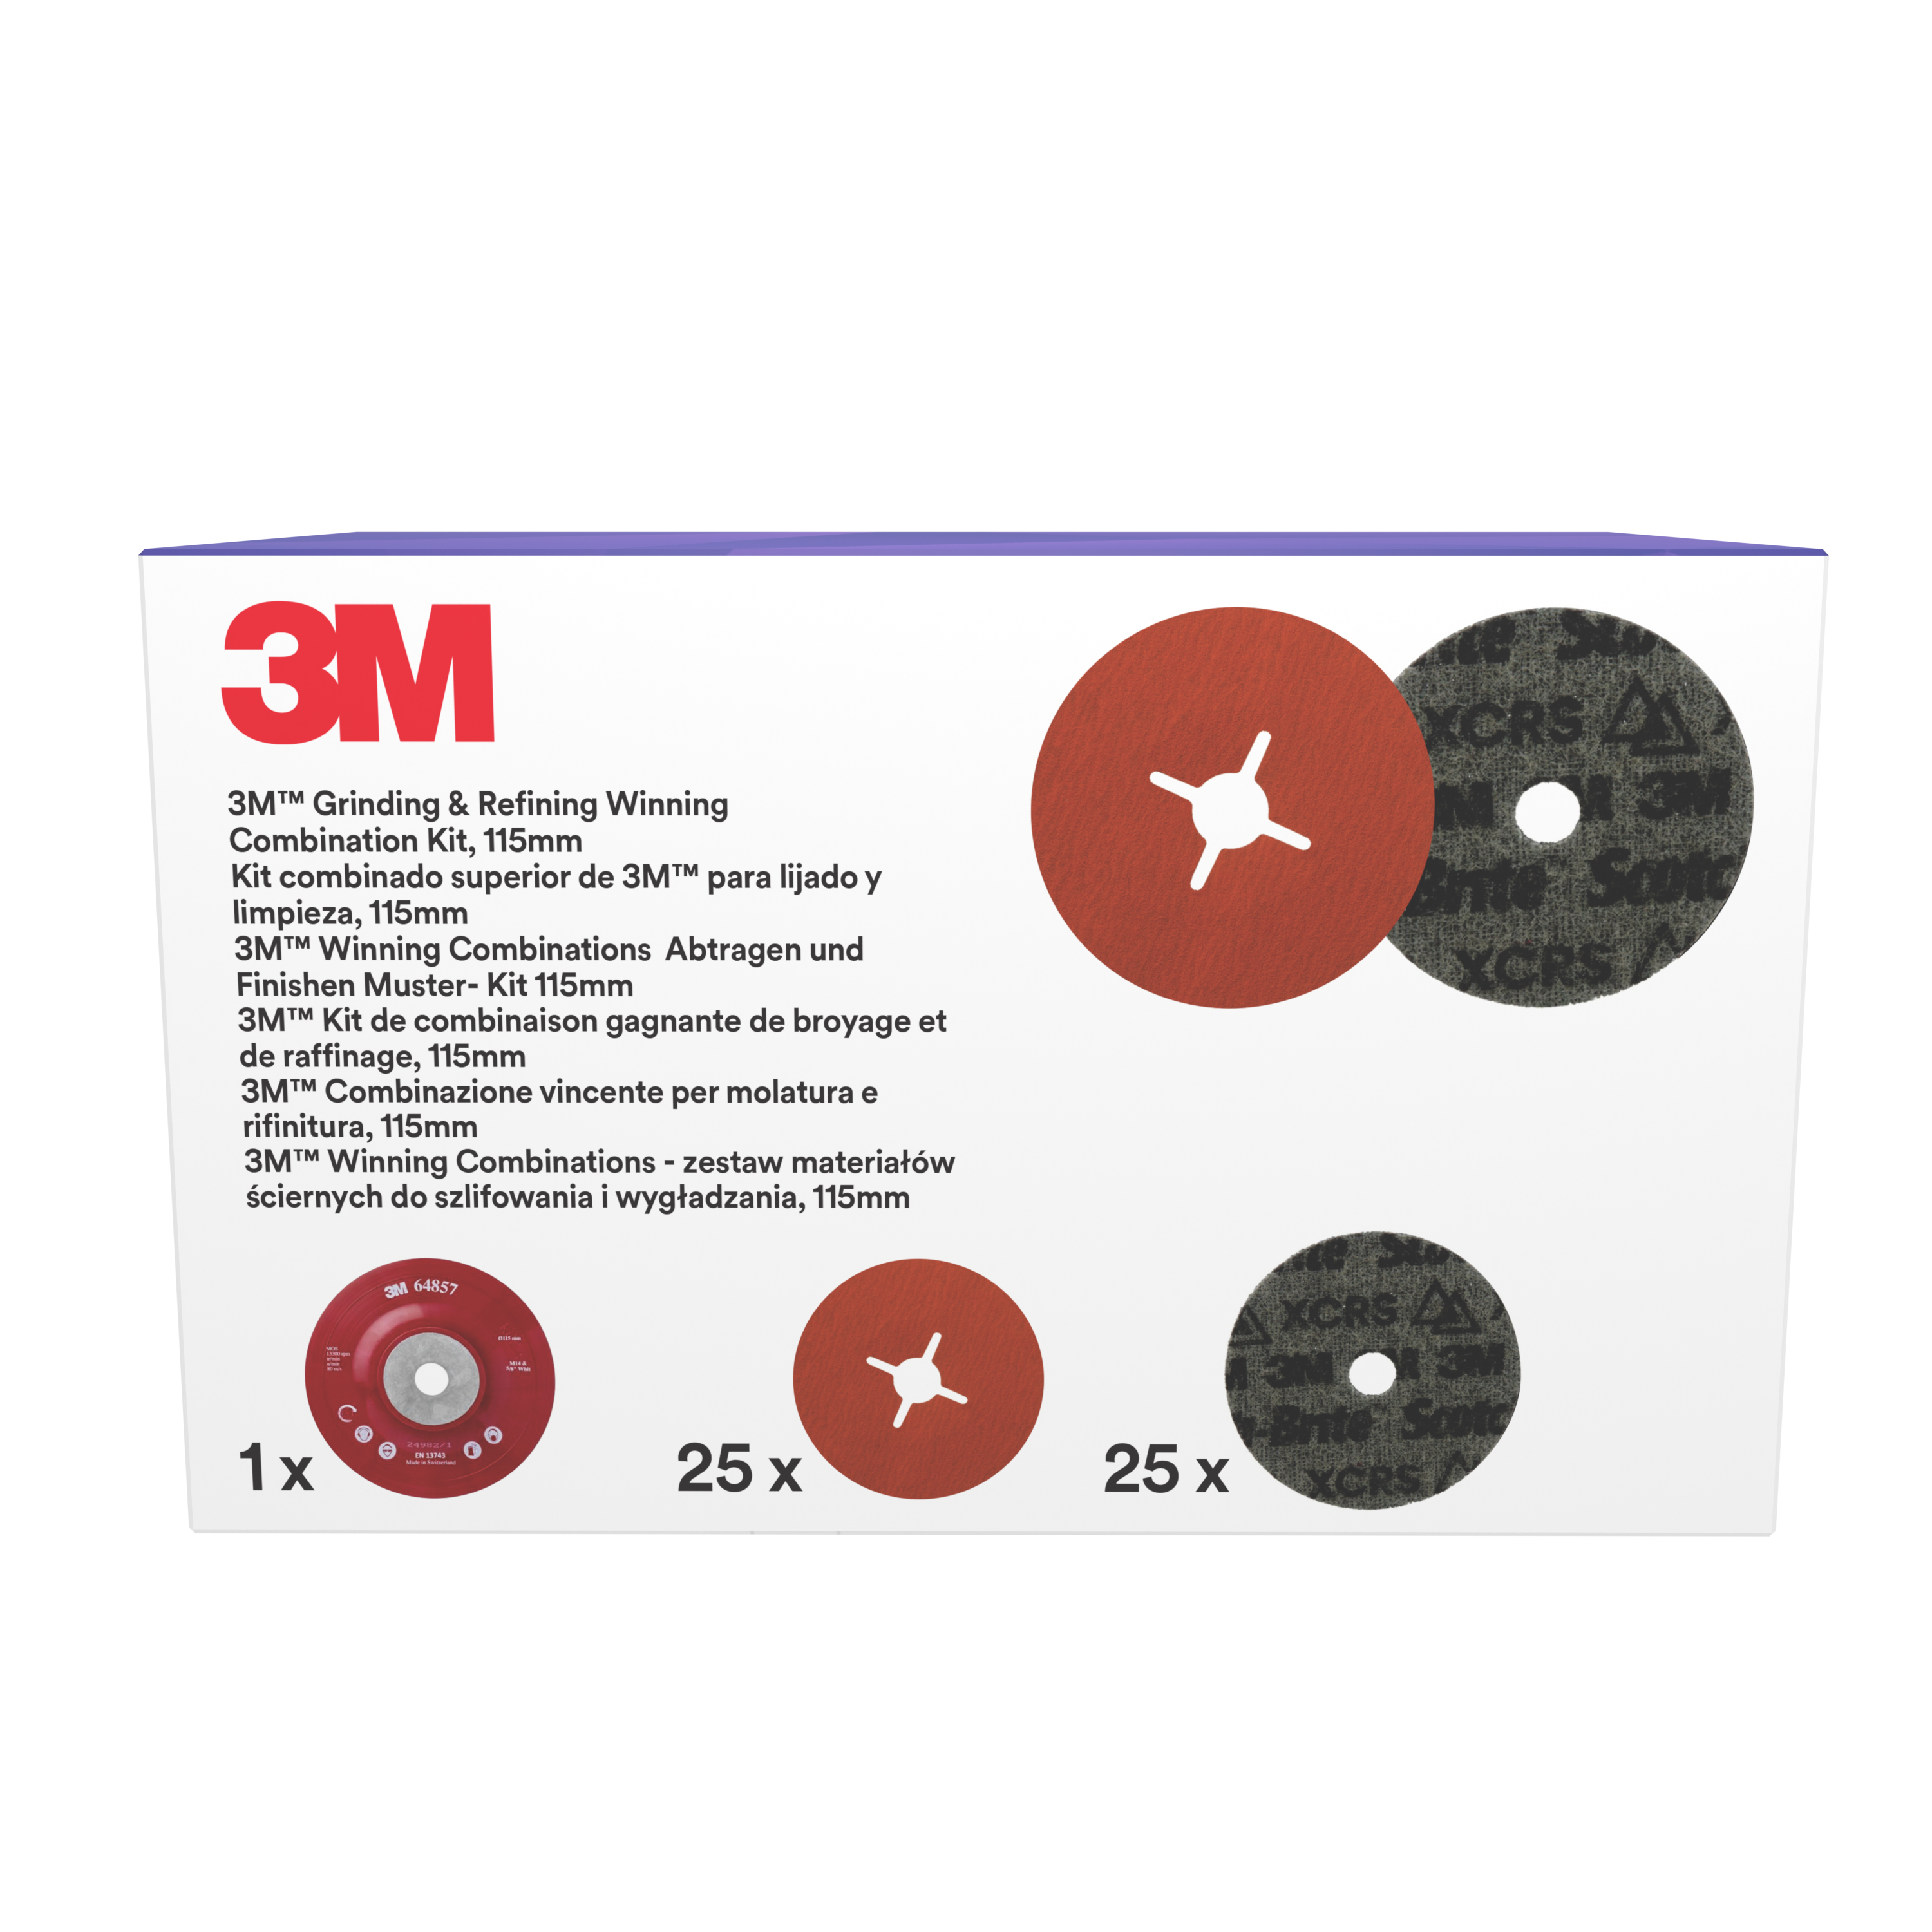 3M™ | Grinding & Refining Kit | enthält 115mm 787C Fiber- und PN-DH Vliesscheibe, mit flachem Stützteller